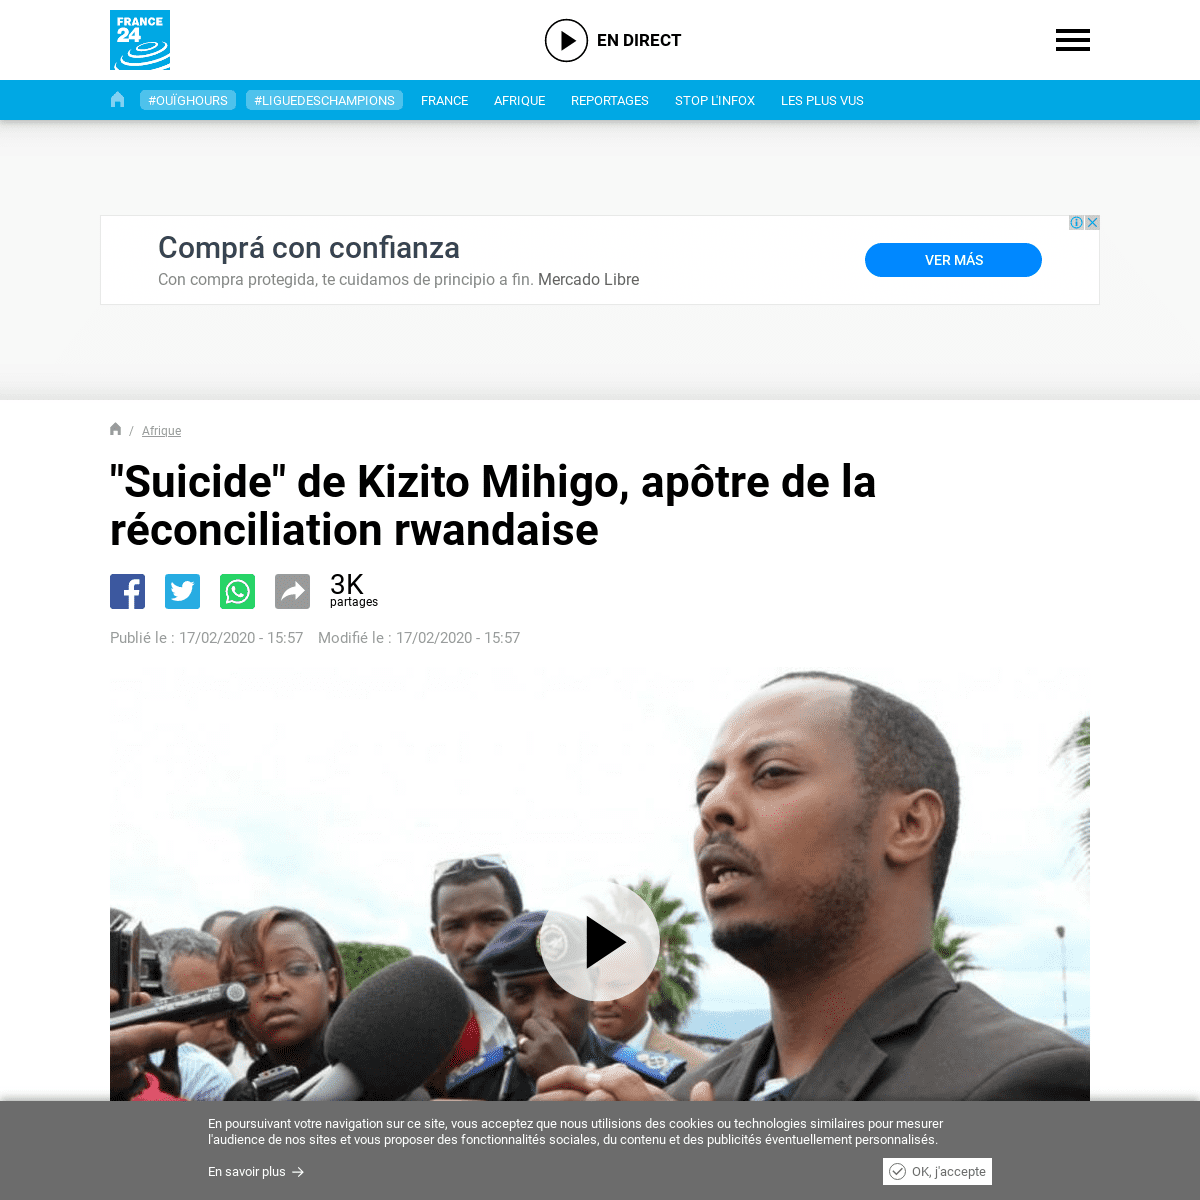 A complete backup of www.france24.com/fr/20200217-rwanda-le-chanteur-engag%C3%A9-kizito-mihigo-s-est-suicid%C3%A9-en-prison